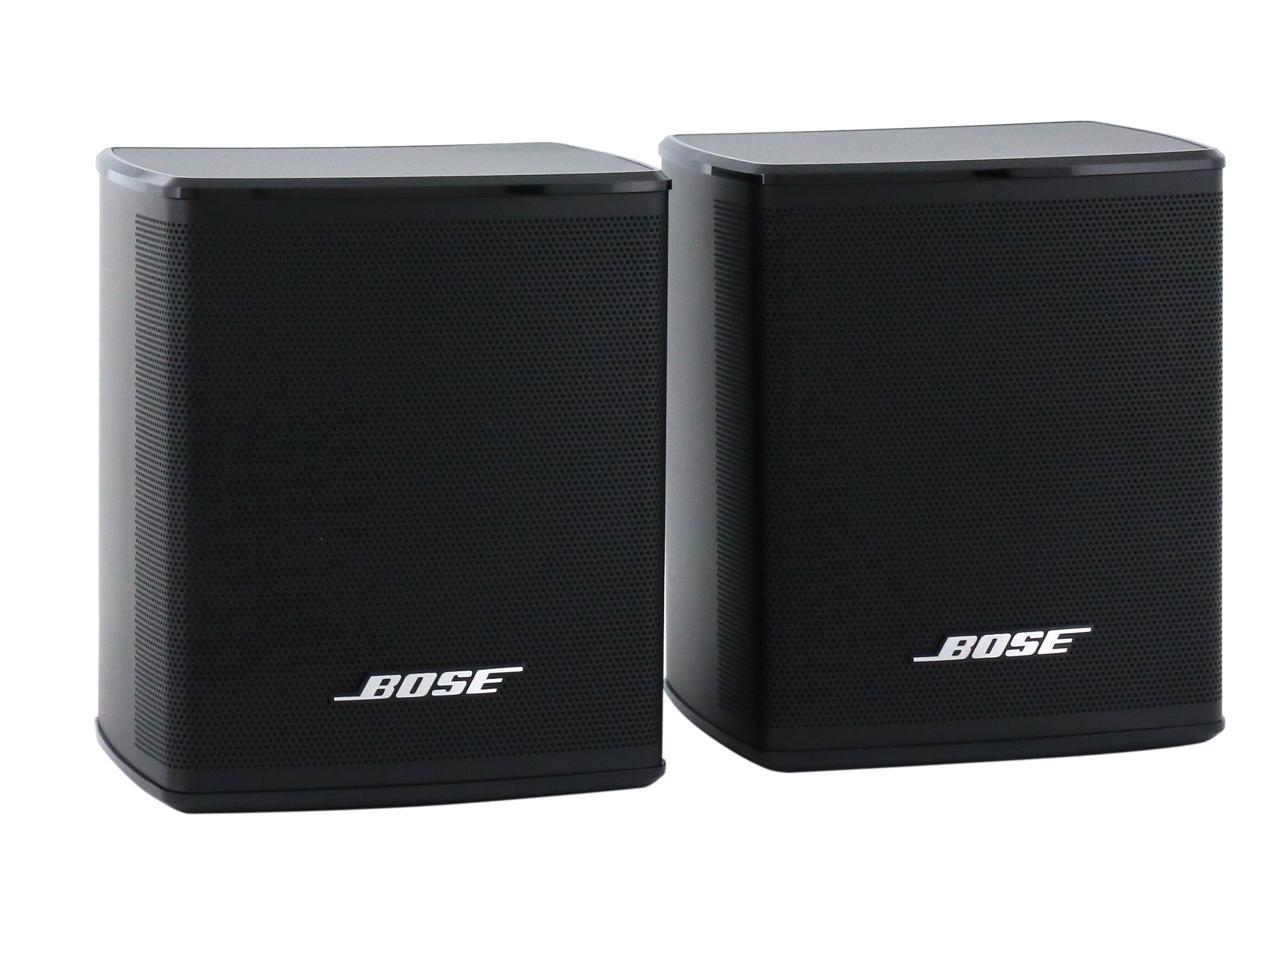 Bose wireless surround sound speakers